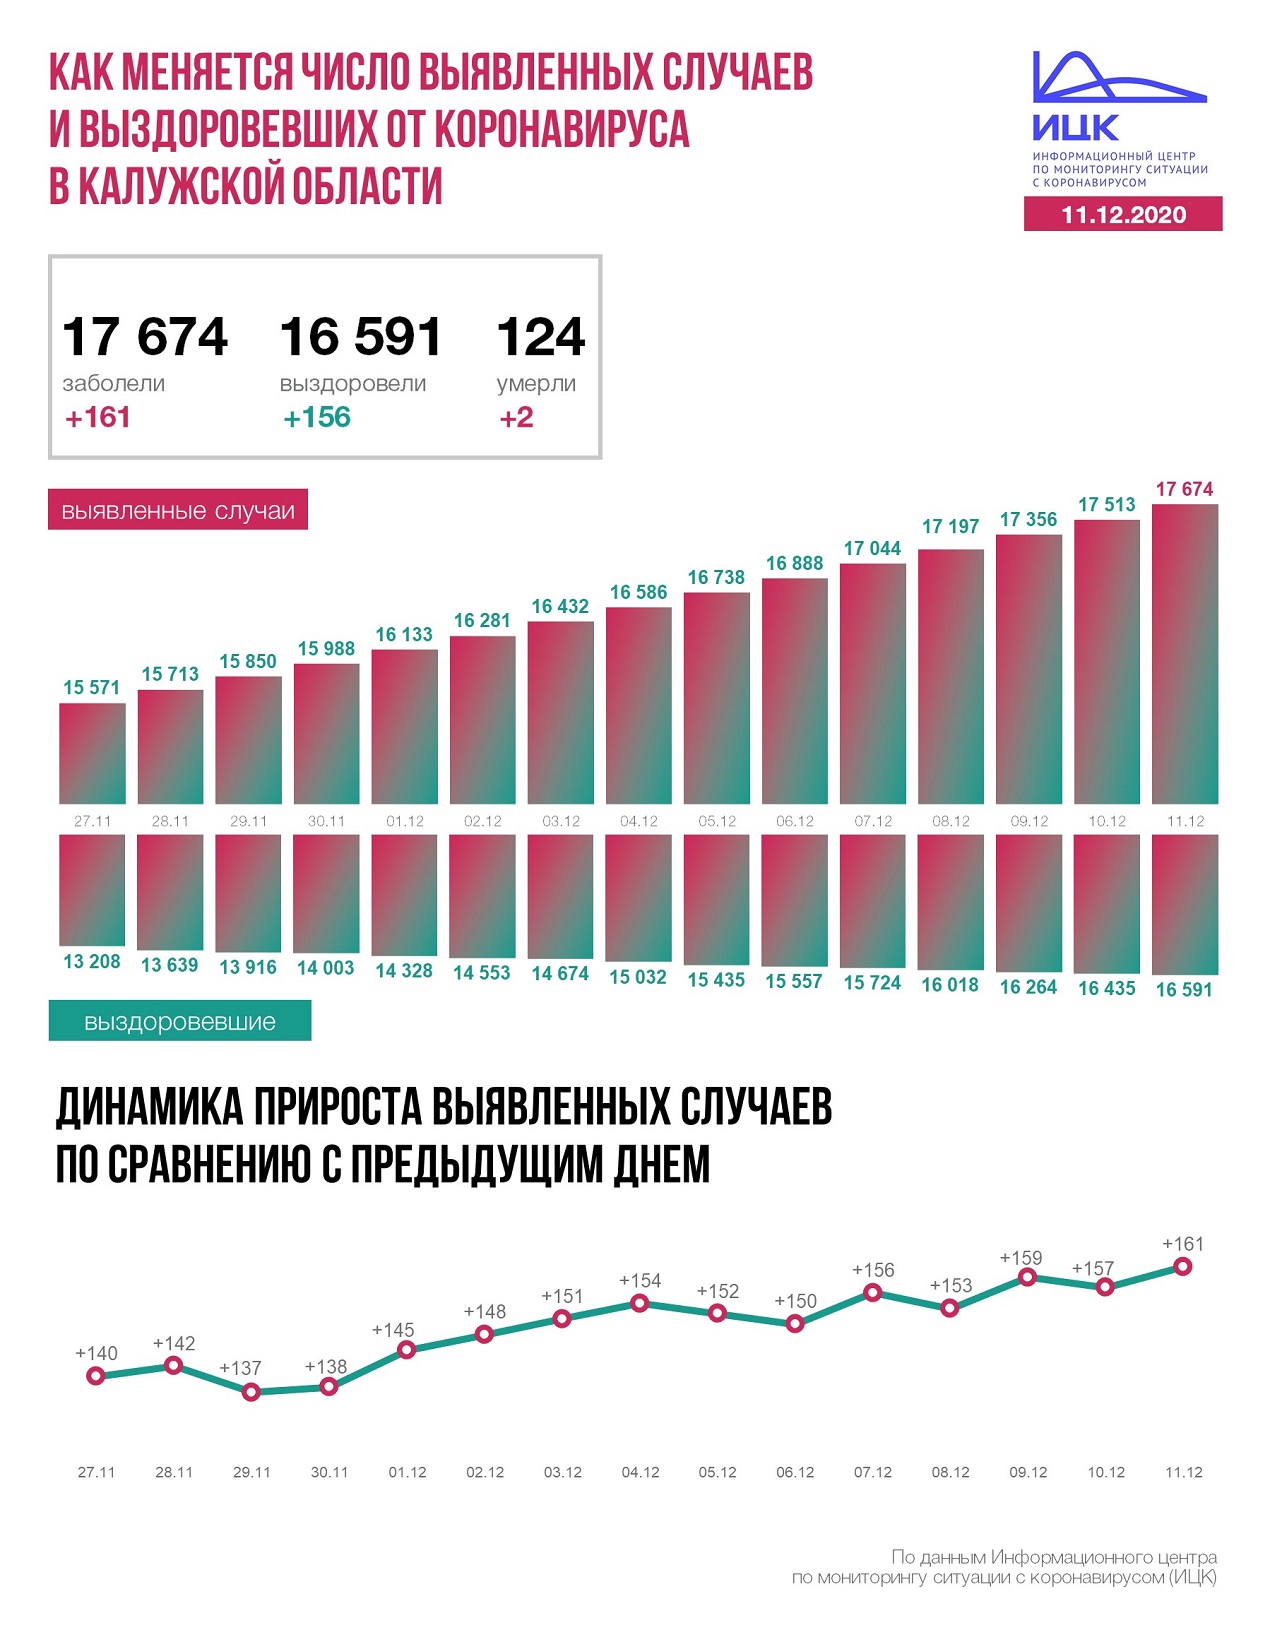 Официальная статистика по коронавирусу в Калужской области на 11 декабря 2020 года.